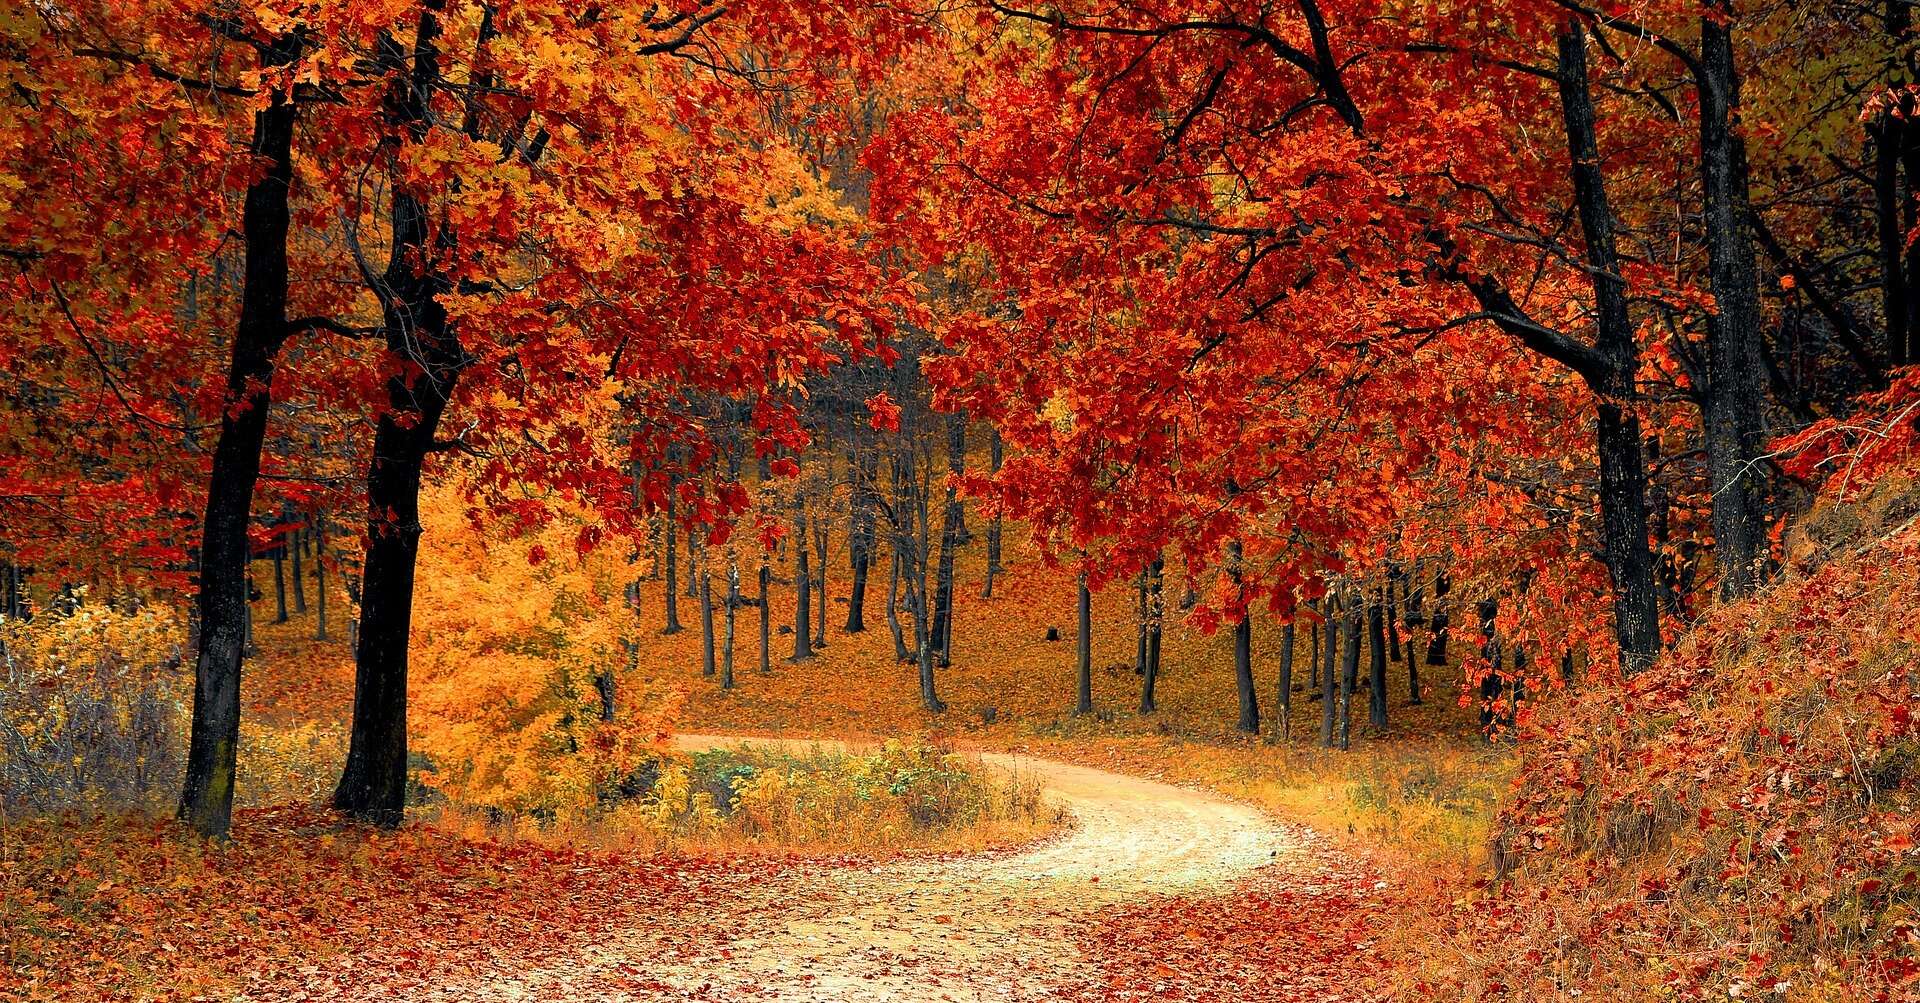 Autumn walk in nature